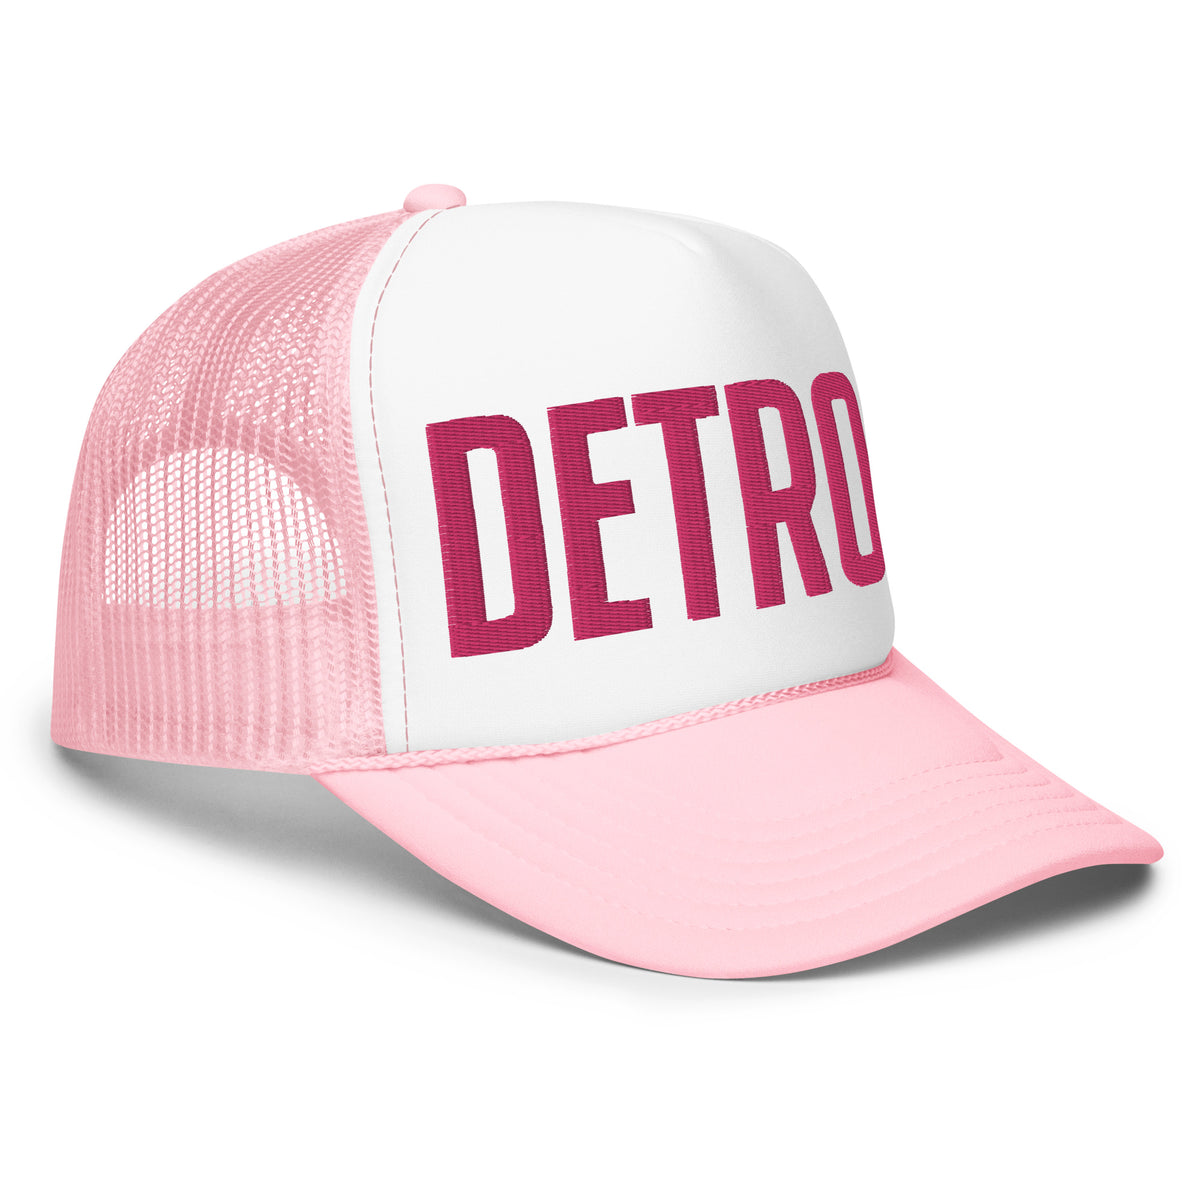 Detroit Foam Trucker Hat - Pink & White - Embroidered    